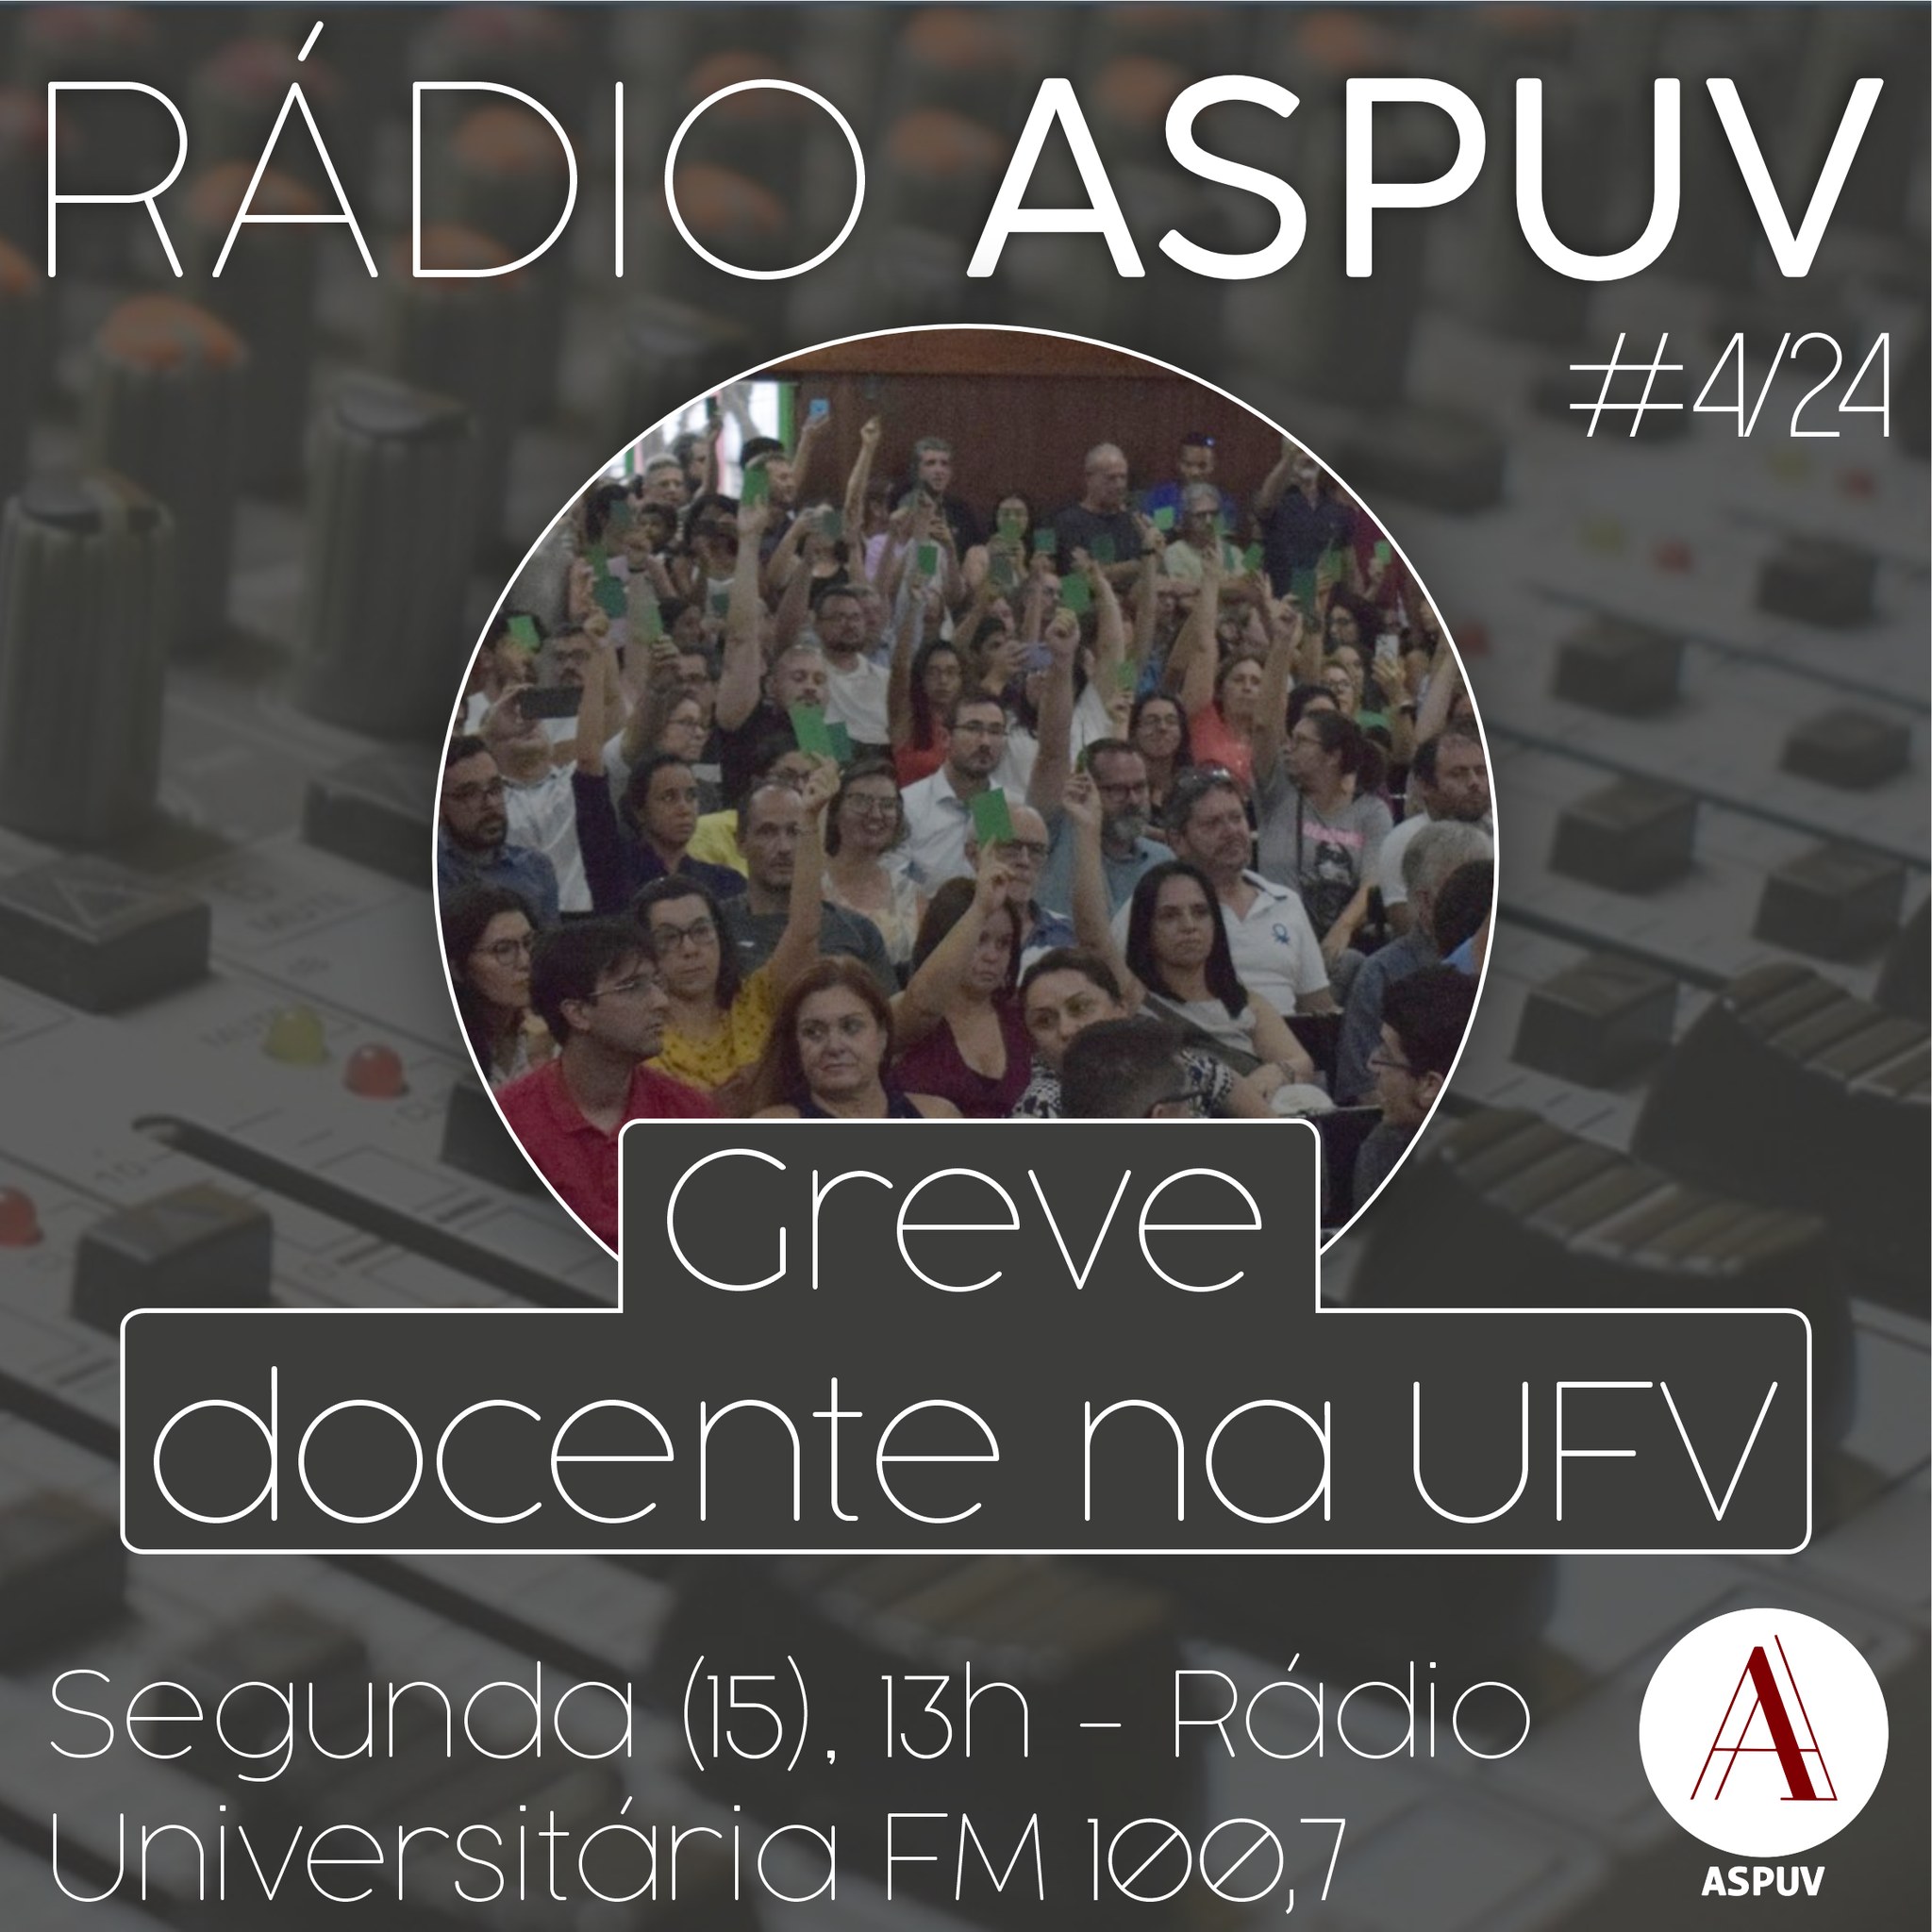 Rádio ASPUV #04/24 | Greve Docente na UFV